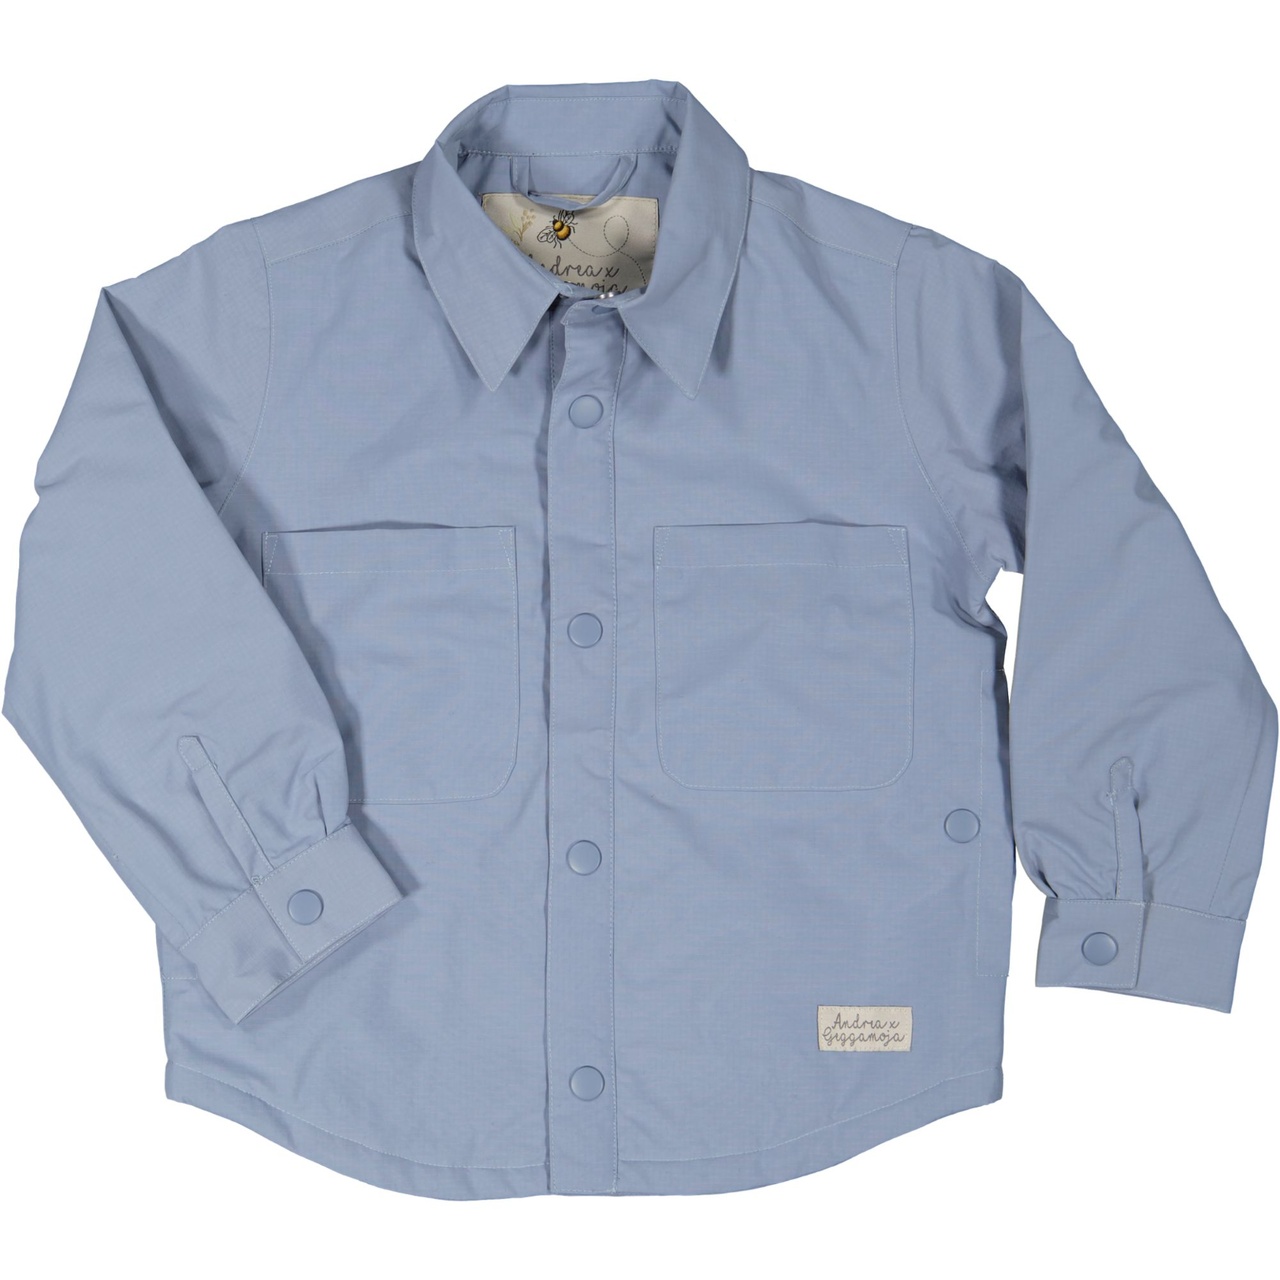 Vindjacka skjortmodell Dusty Blue 74/80